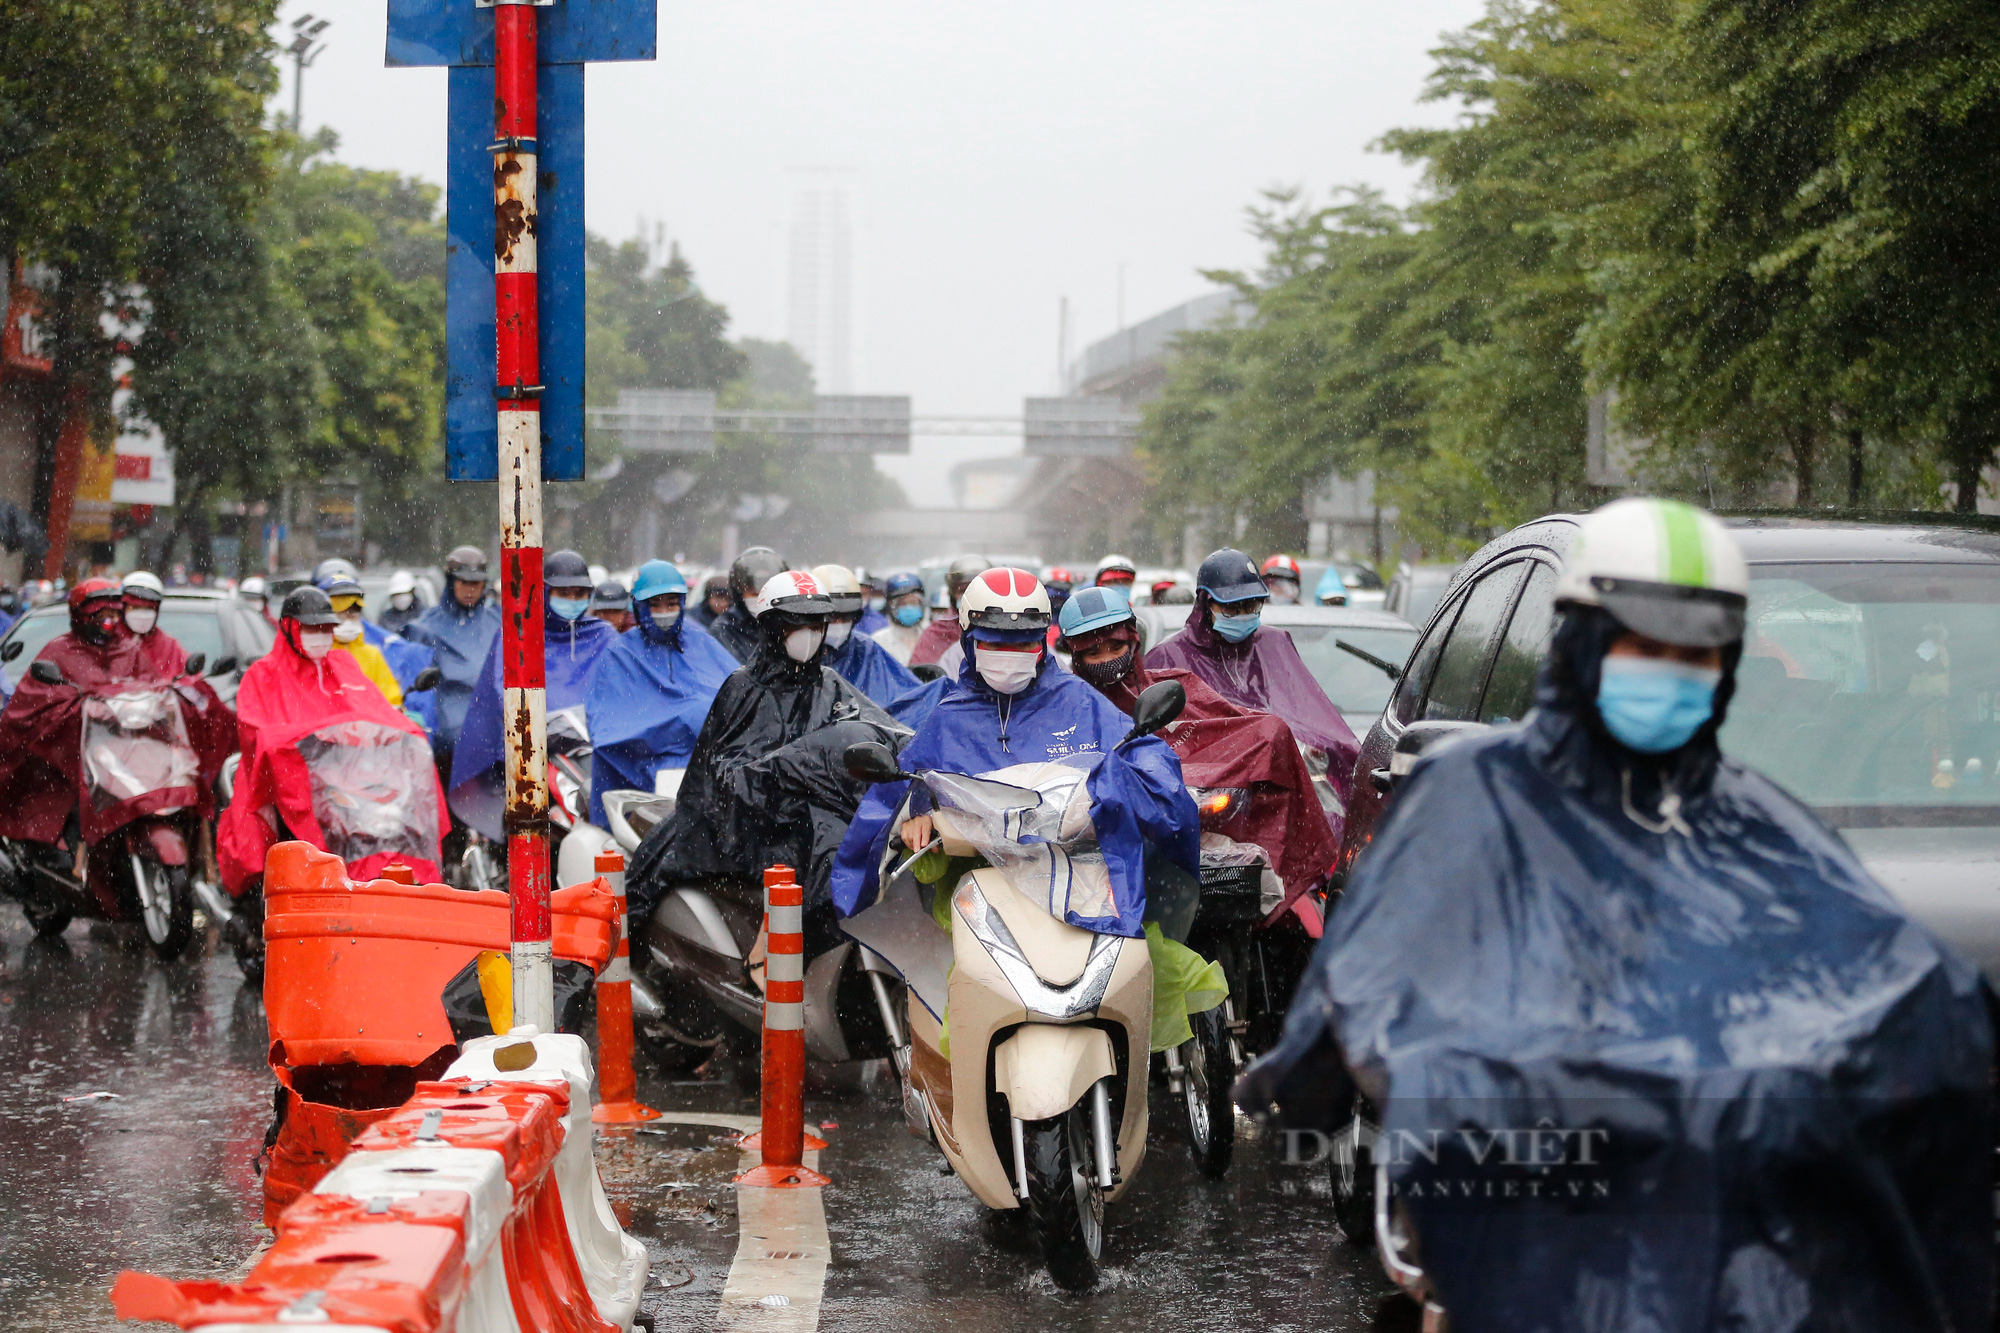 Nhiều tuyến đường Hà Nội ùn ứ kéo dài, người dân chôn chân trong mưa rét ngày đầu tuần - Ảnh 4.